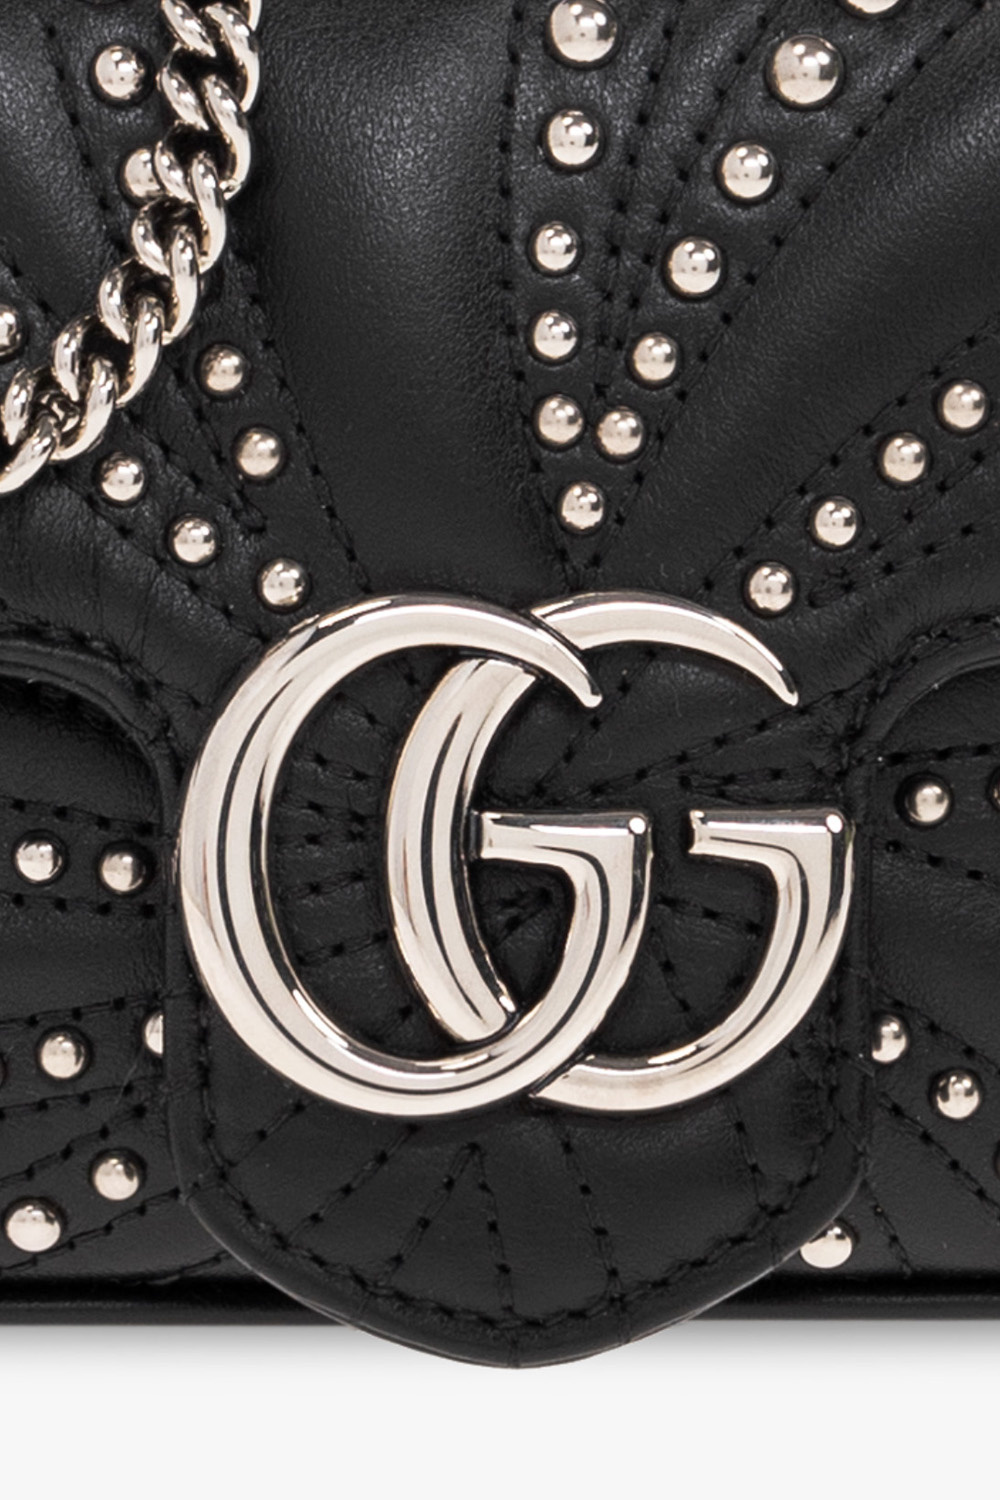 GG Marmont Supermini Shoulder Bag in Black - Gucci